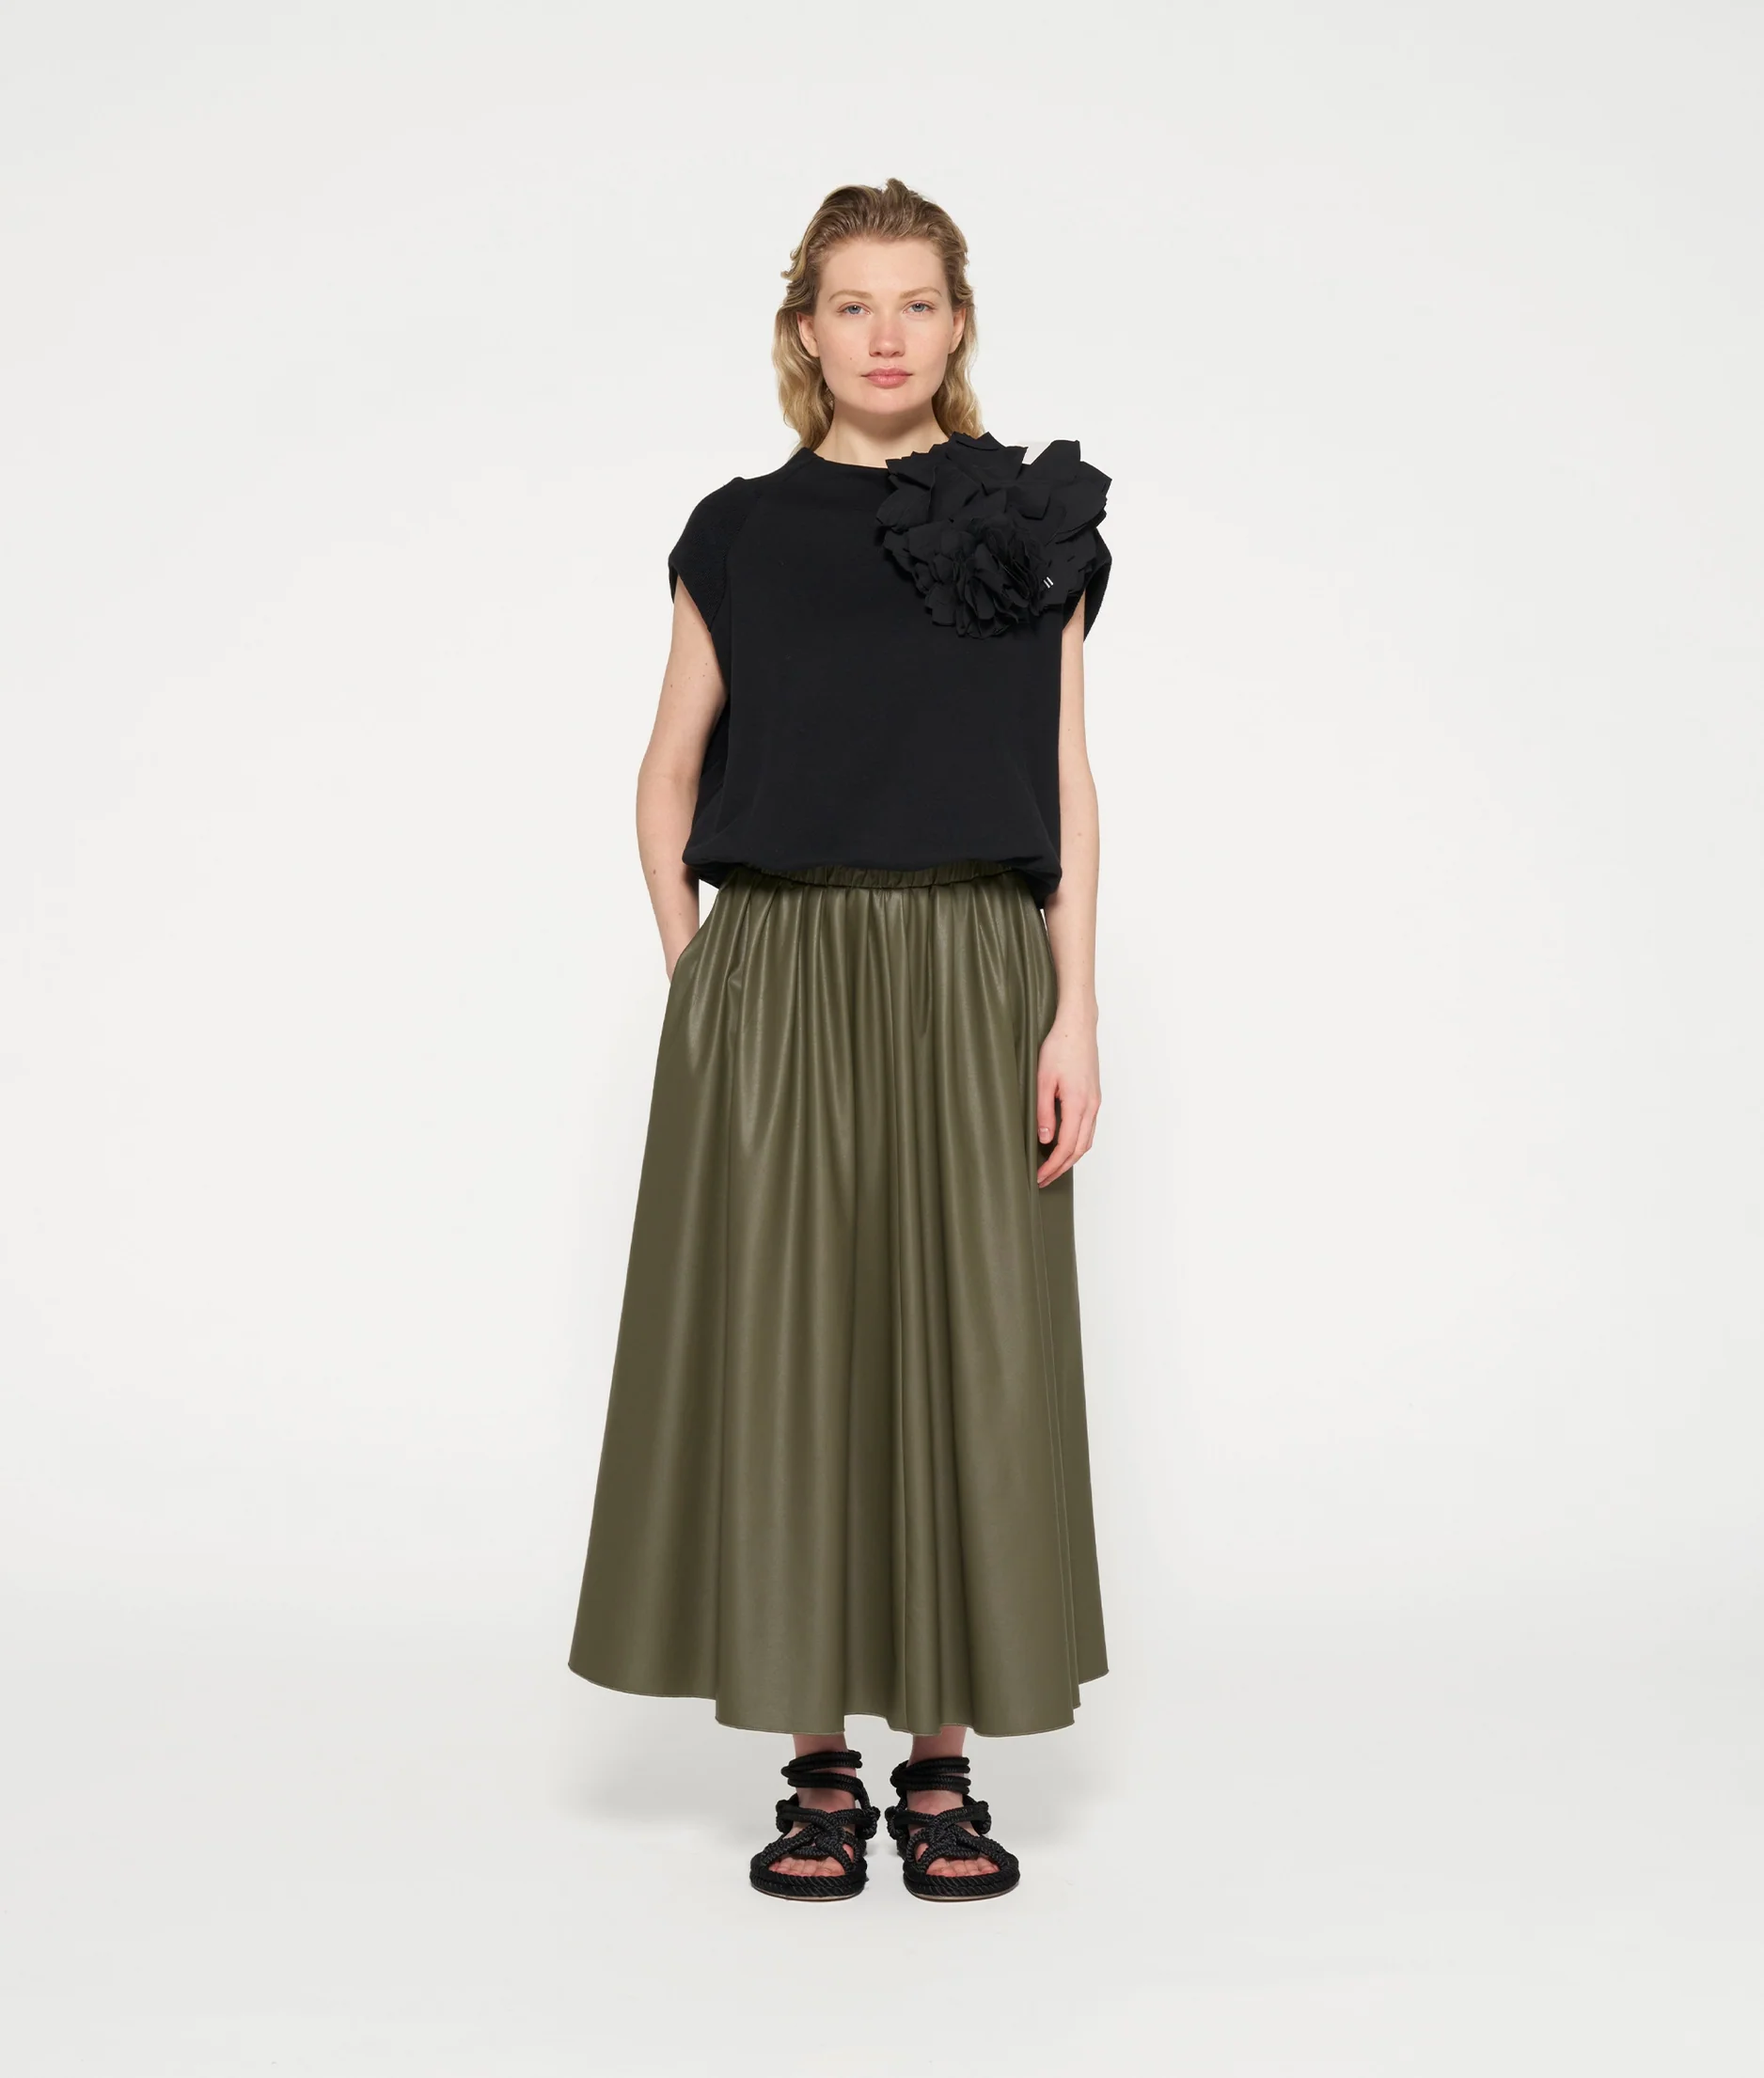 Leather Look pleated Skirt - tendays